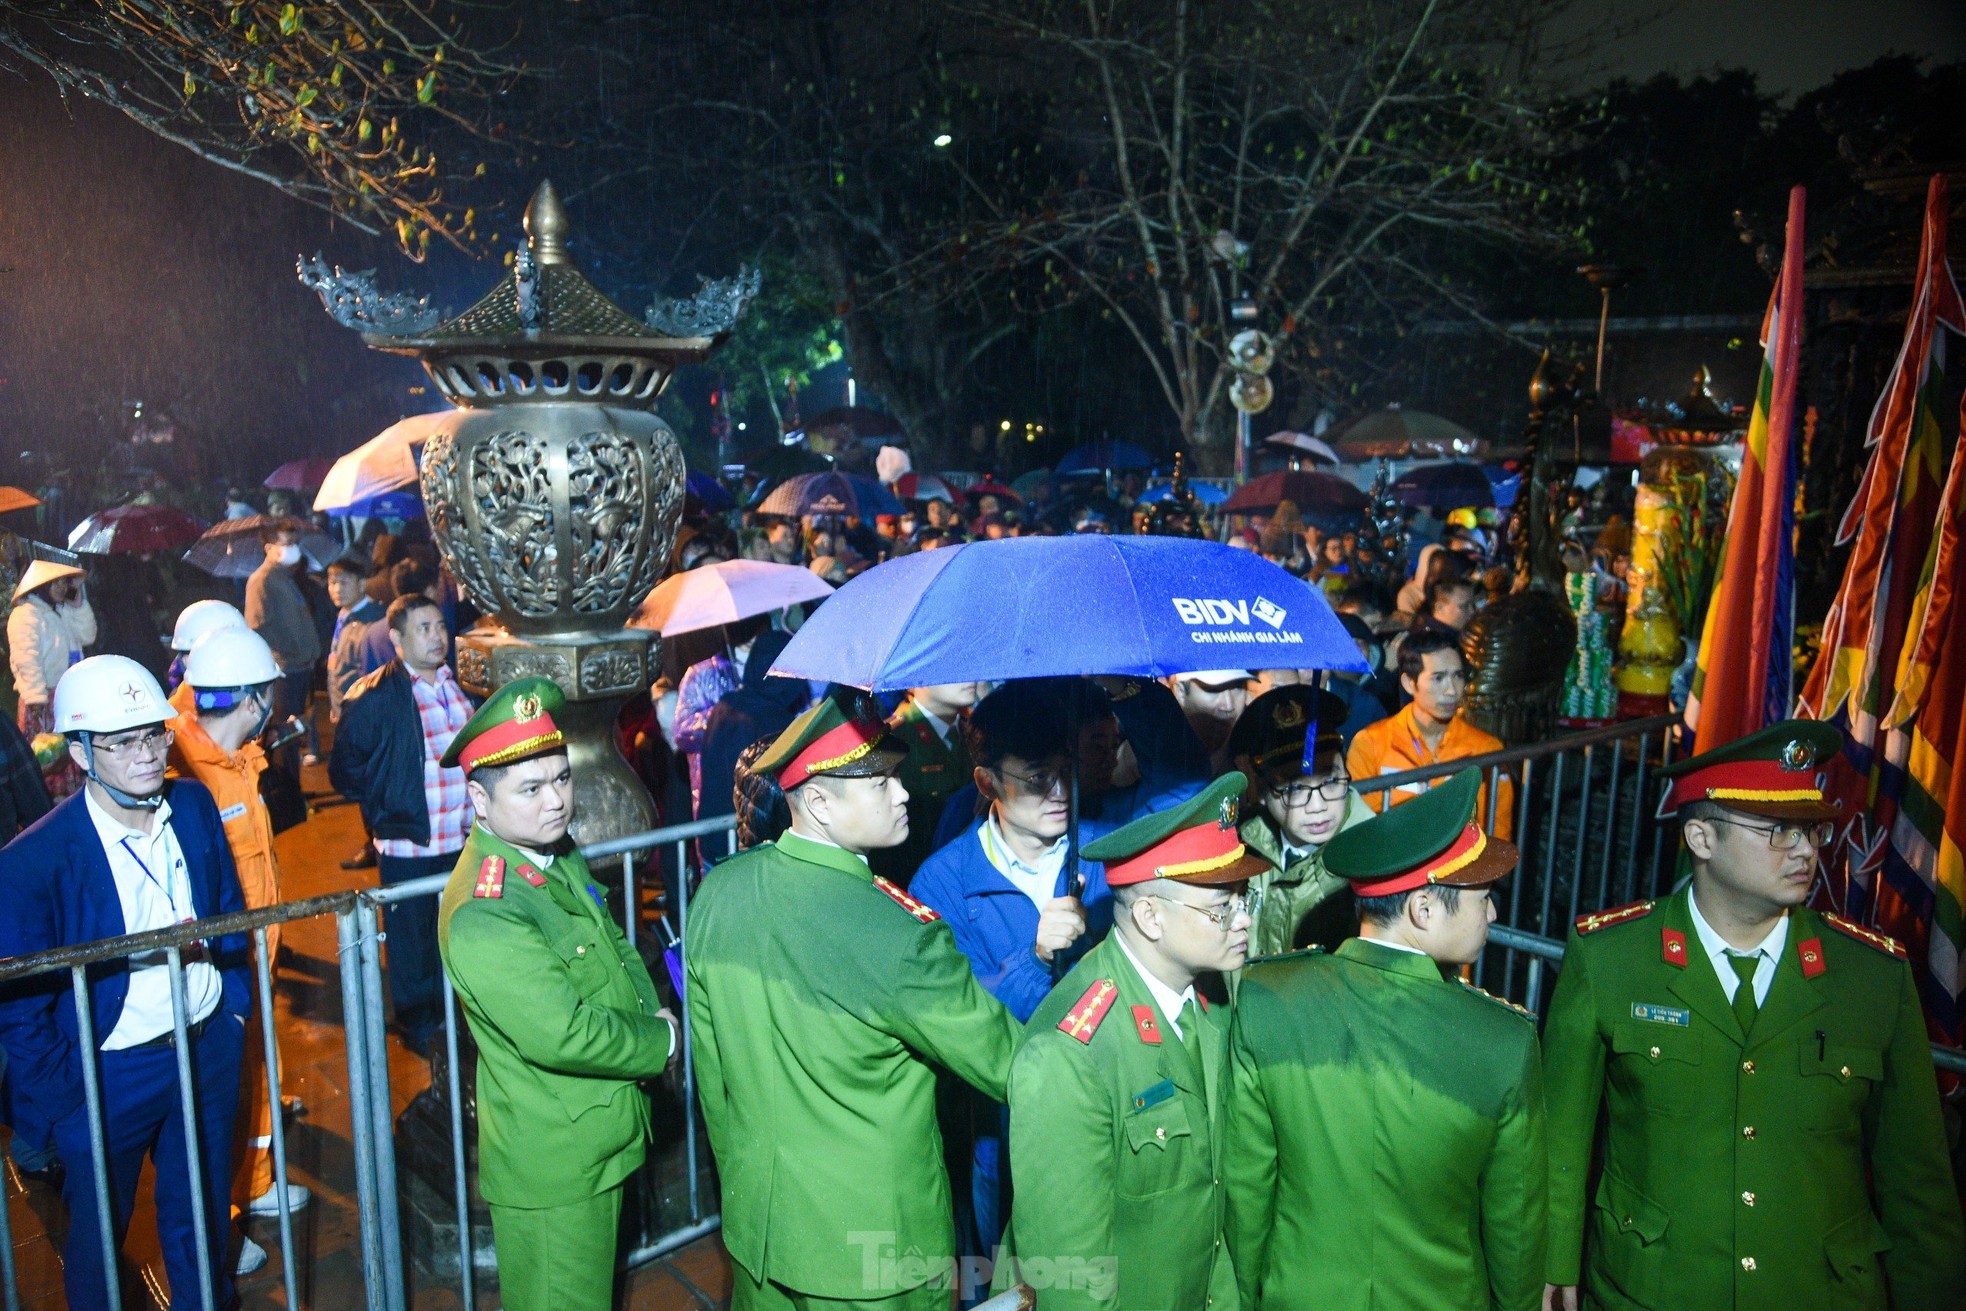 Dòng người đổ về dự khai ấn đền Trần dưới mưa lạnh, đặt 70 chốt an ninh- Ảnh 1.